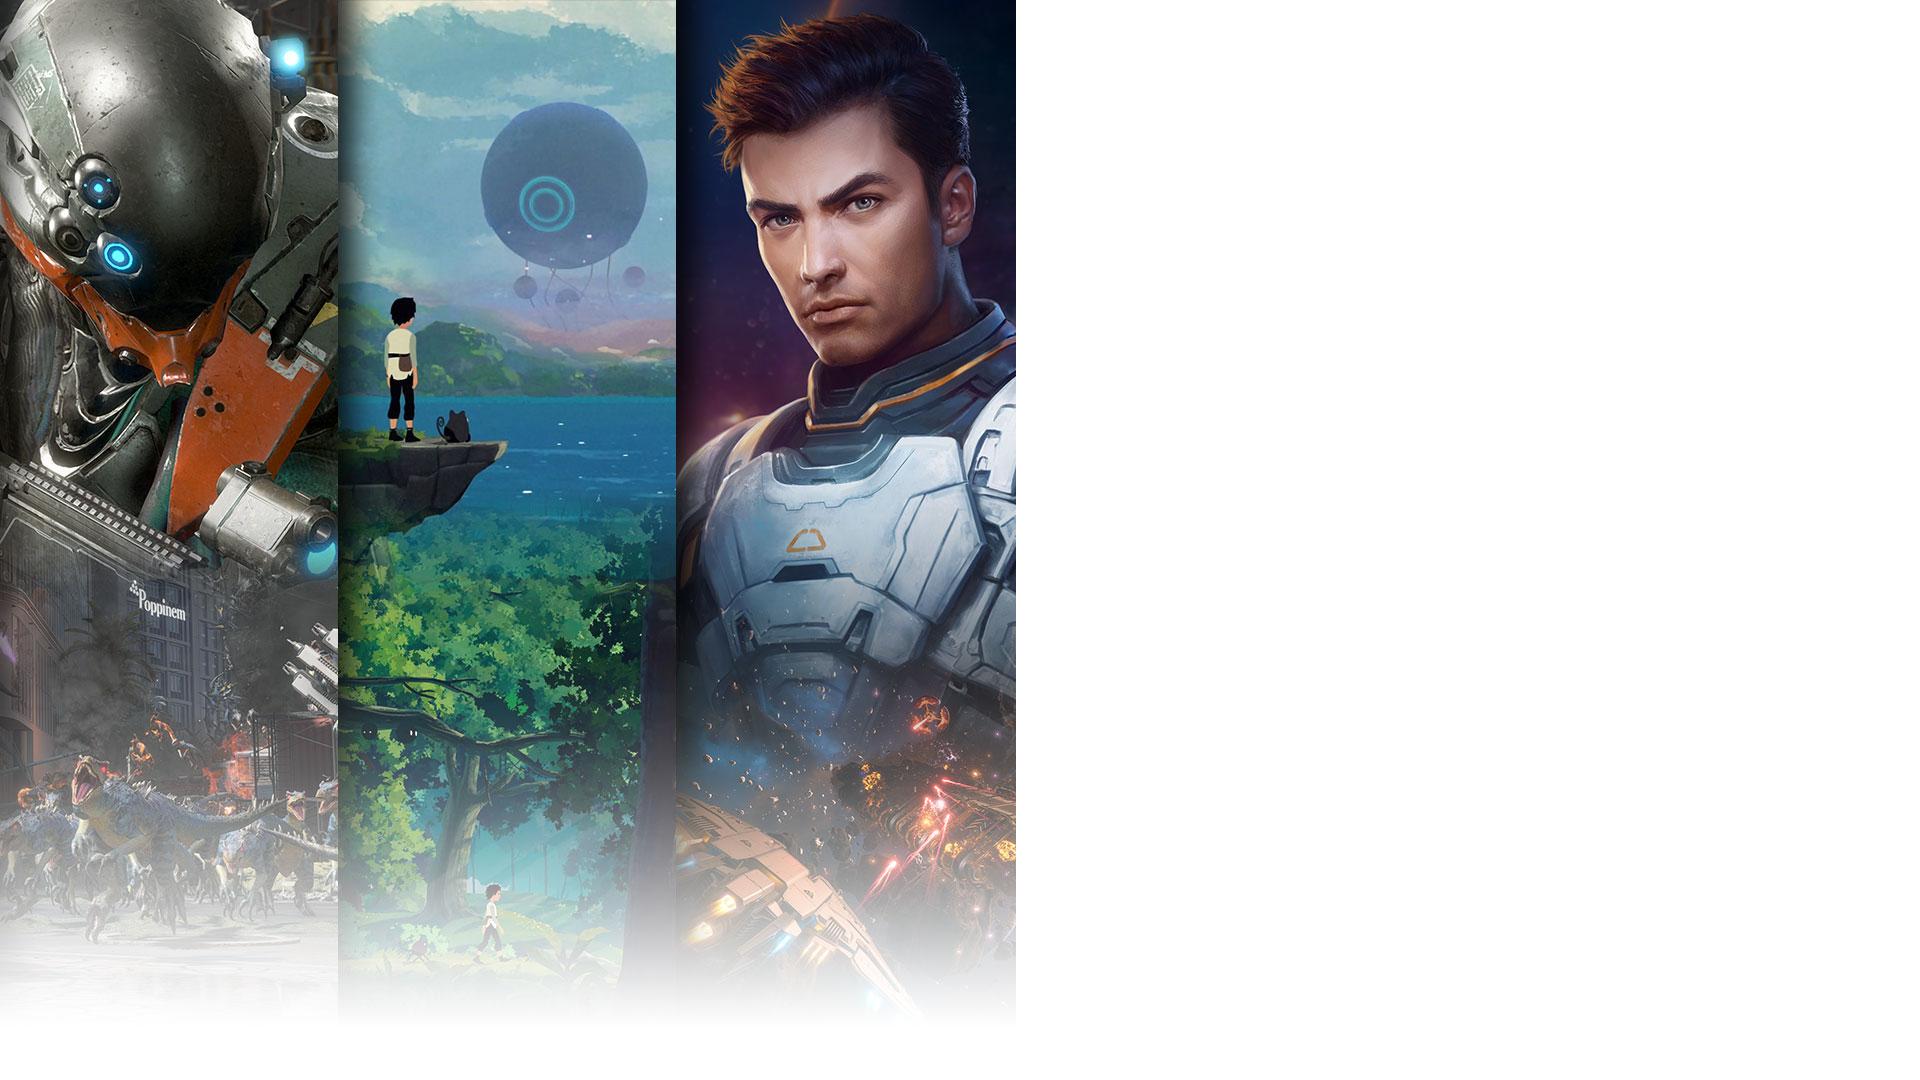 Игровое изображение из трех игр, выходящих на Game Pass в первый день: Exoprimal, Planet of Lana и Everspace 2.